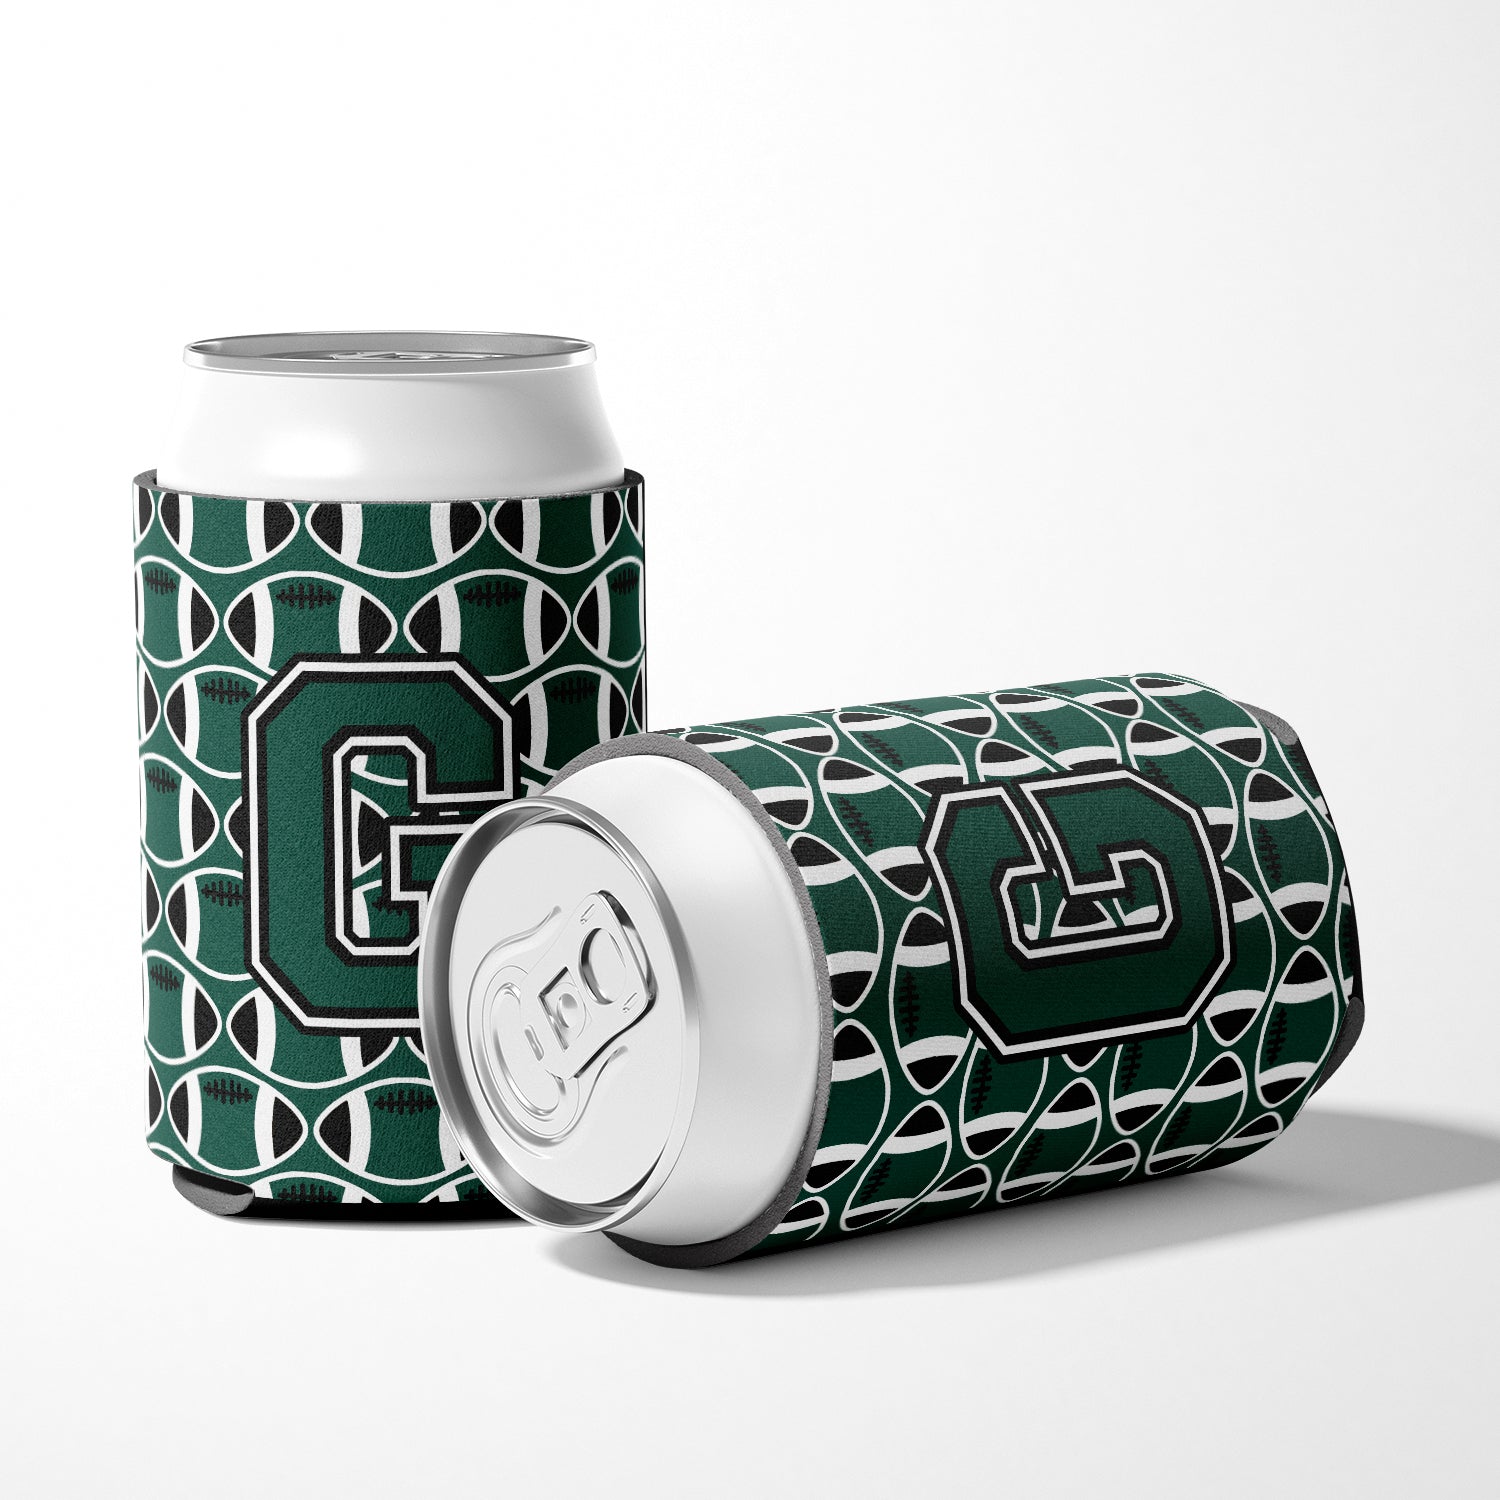 Letter G Football Green and White Can or Bottle Hugger CJ1071-GCC